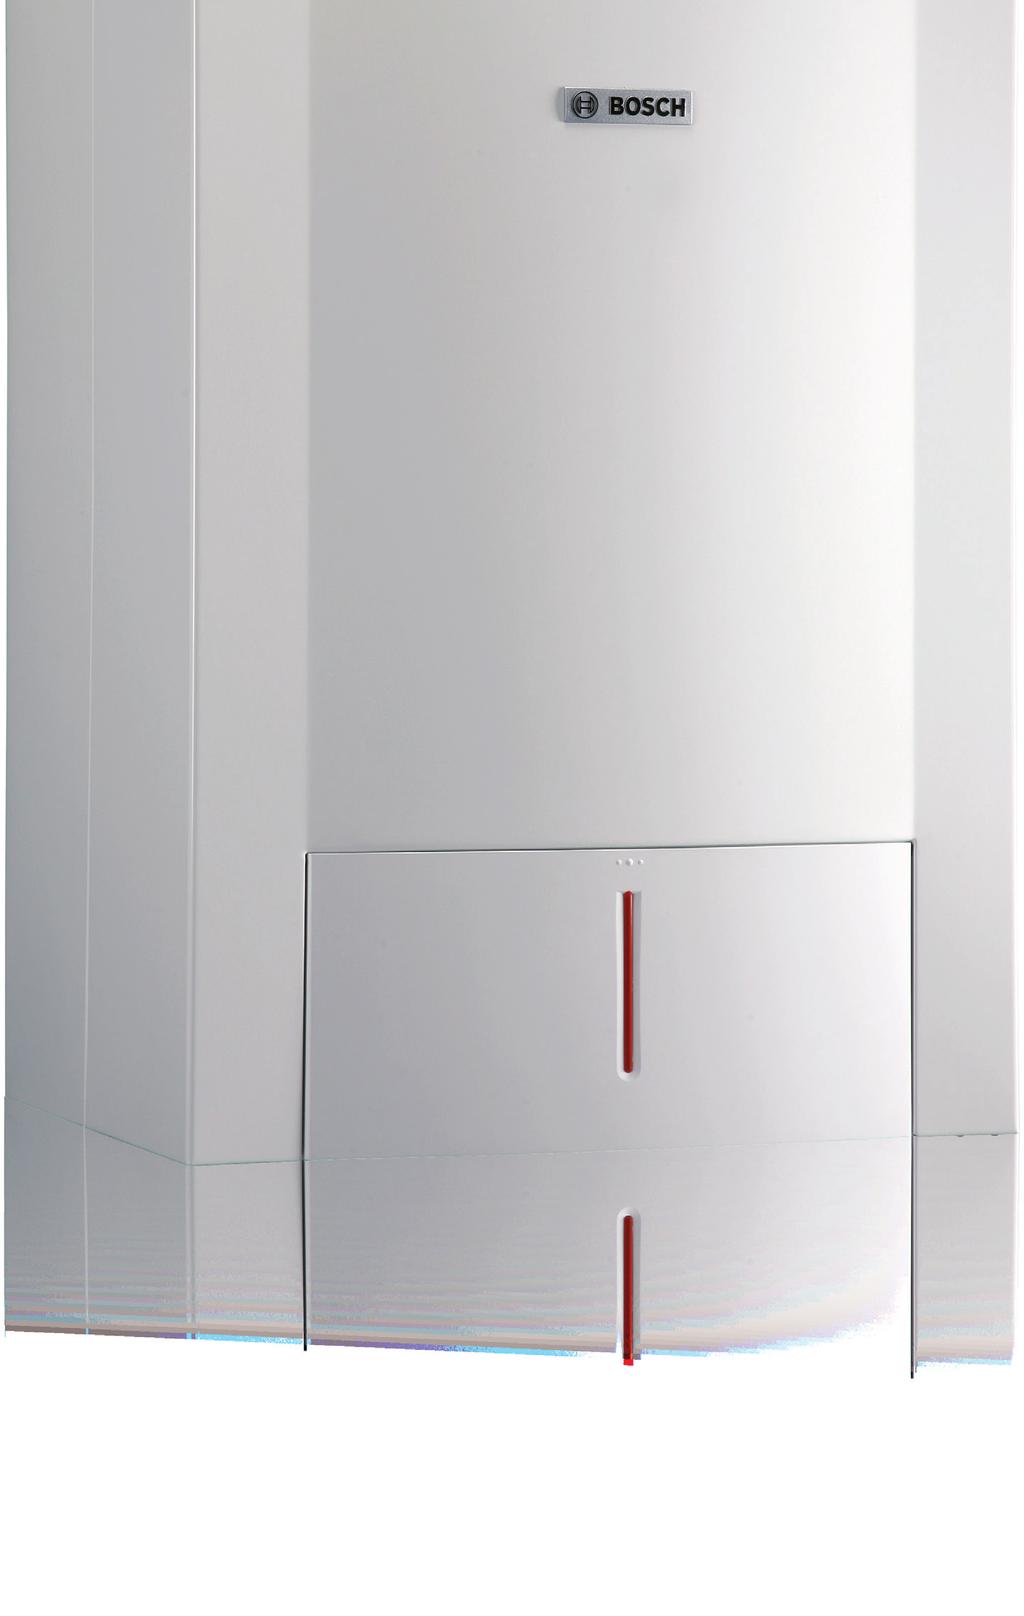 0 Grejanje sa energetski najefikasnijim rešenjima Condens 5000 WT Za istovremeno grejanje i pripremu sanitarne vode Uređaj Condens 5000 WT Vam omogućava veći komfor u korišćenju.